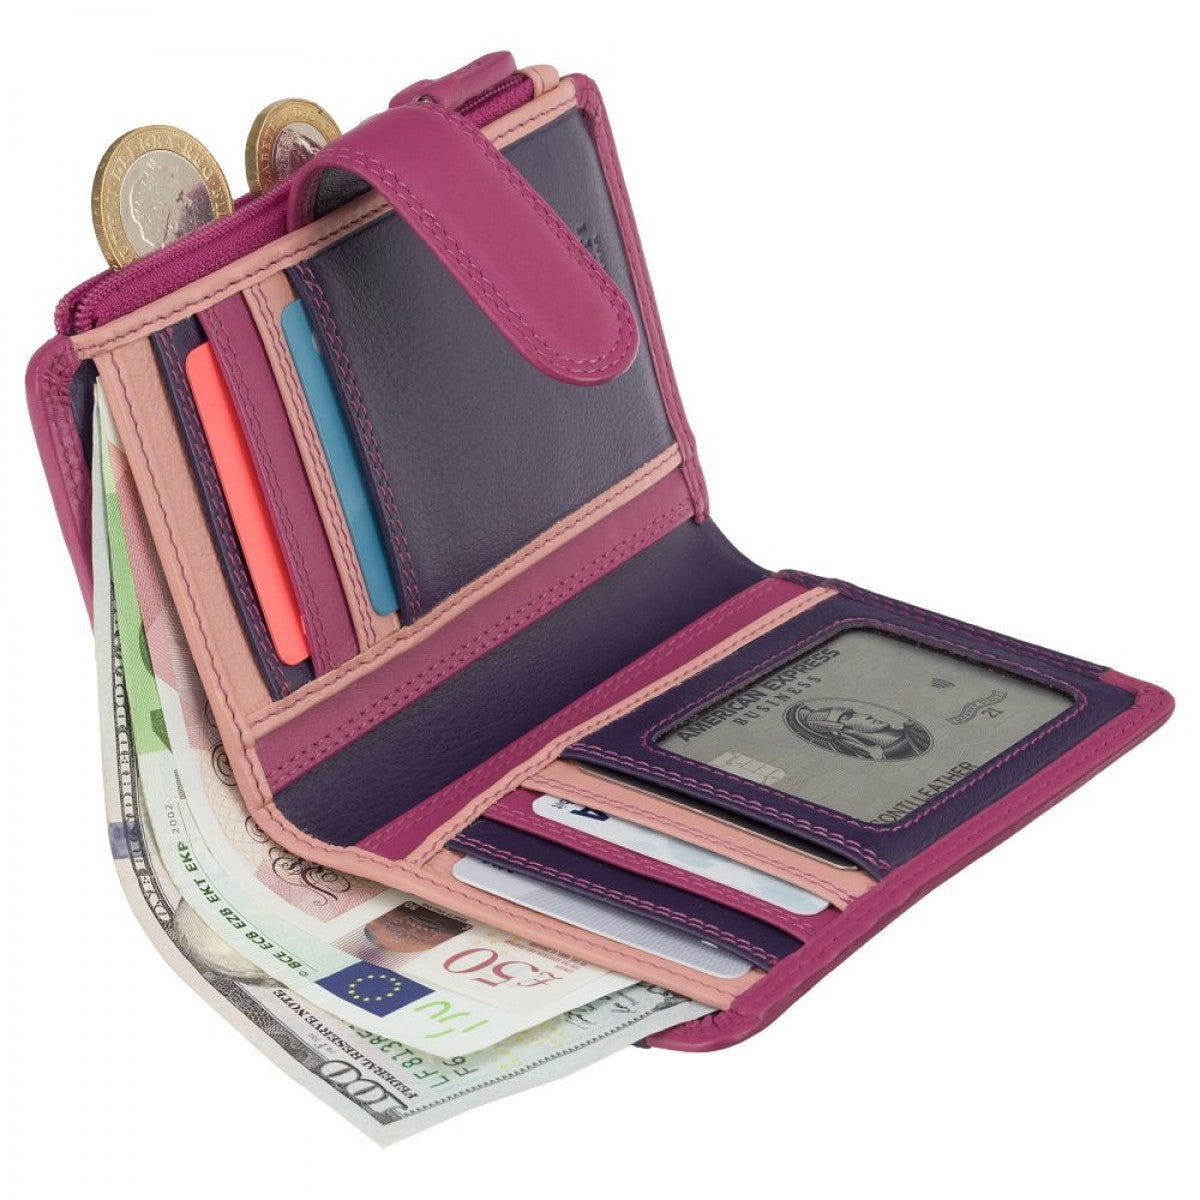 Рожевий жіночий гаманець Visconti RB97 BERRY MULTI